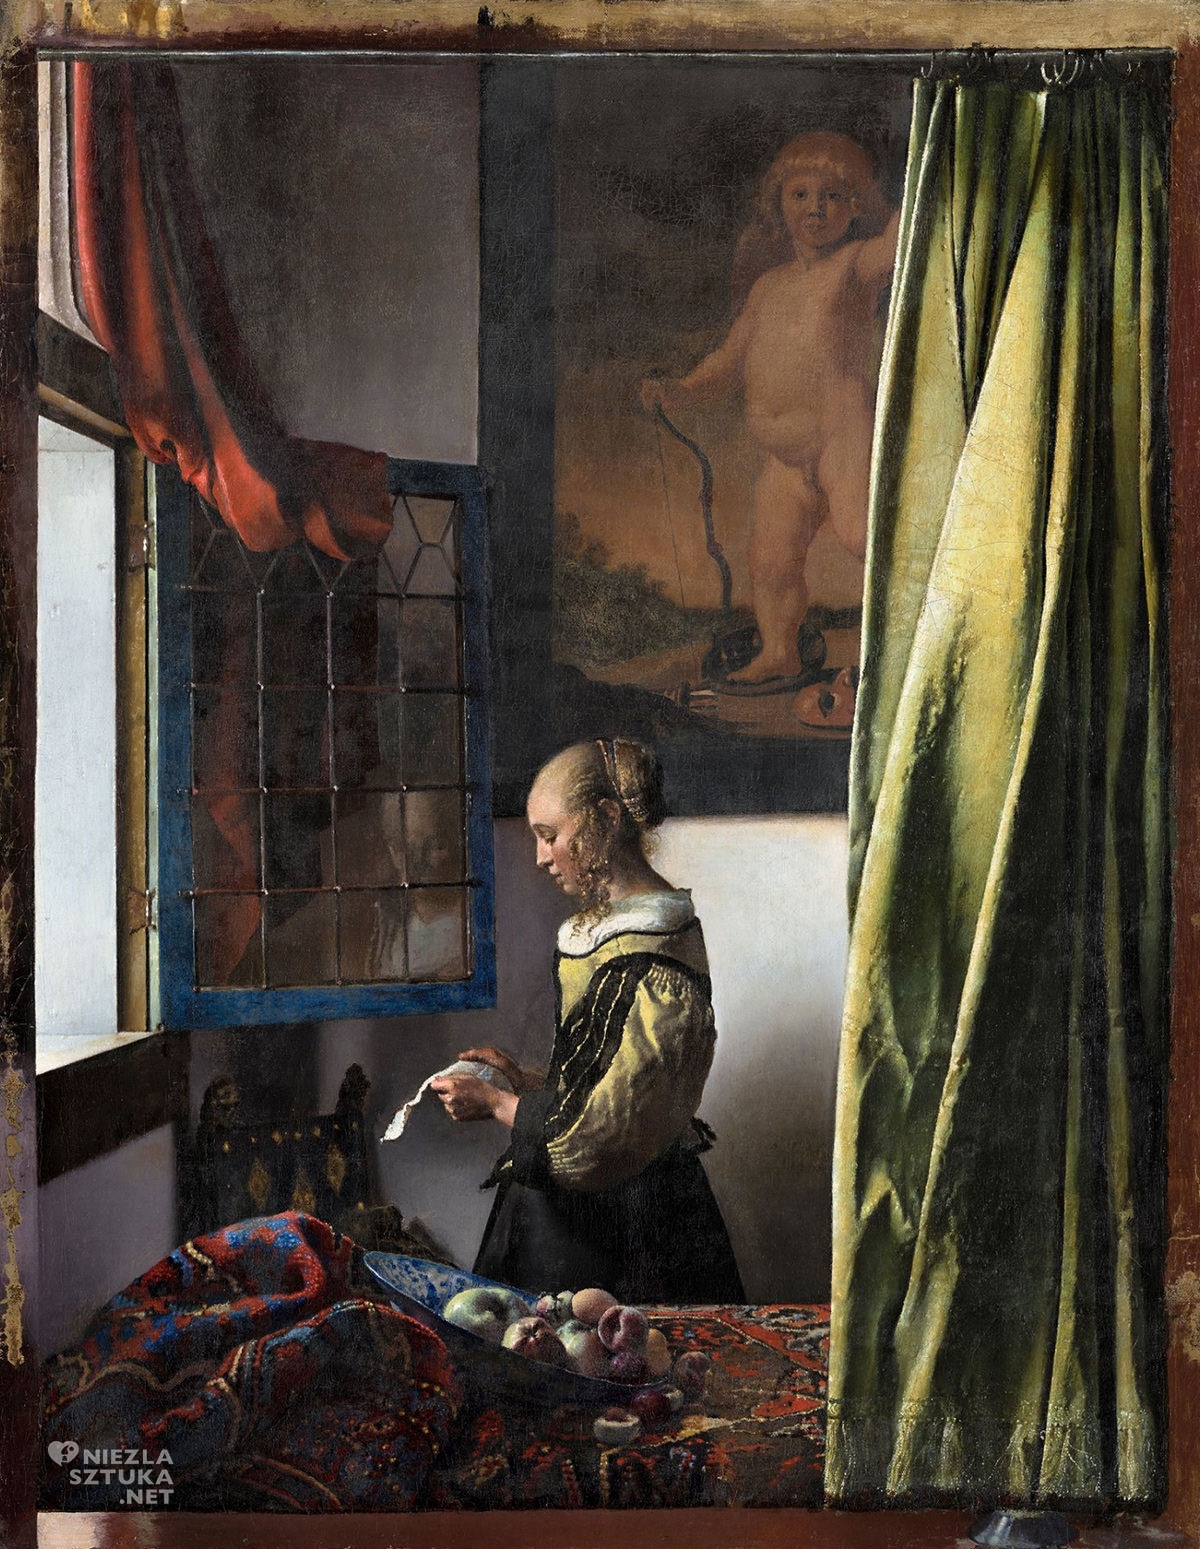 Johannes Vermeer, Dziewczyna czytająca list przy otwartym oknie, kupidyn, obraz w trakcie renowacji, ok. 1657-59, Galeria Obrazów Starych Mistrzów, Drezno, Niezła sztuka